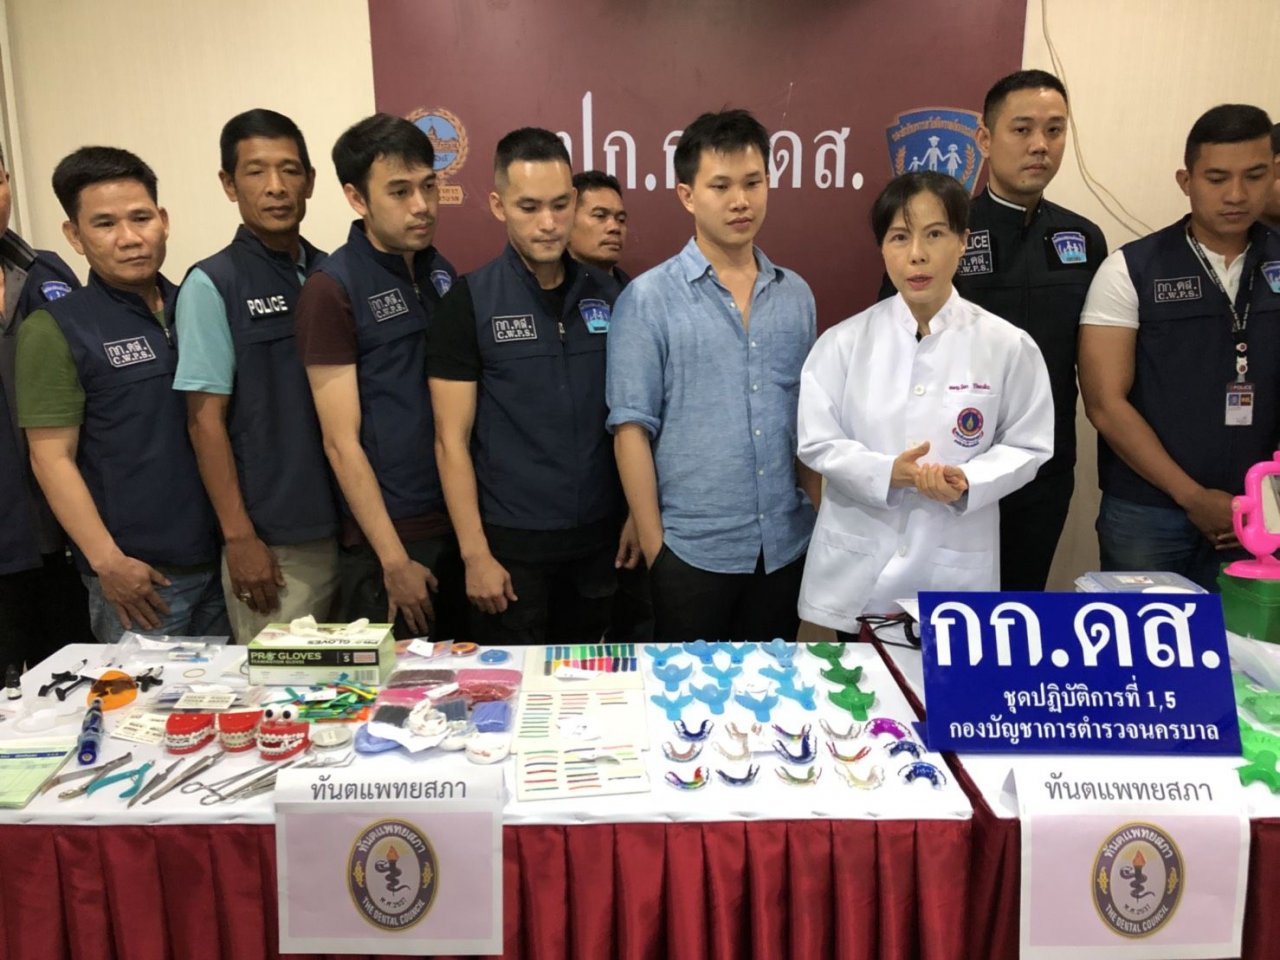 La police thaïlandaise a récemment arrêté deux dentistes amateurs qui proposaient des soins dentaires à des prix extrêmement bas